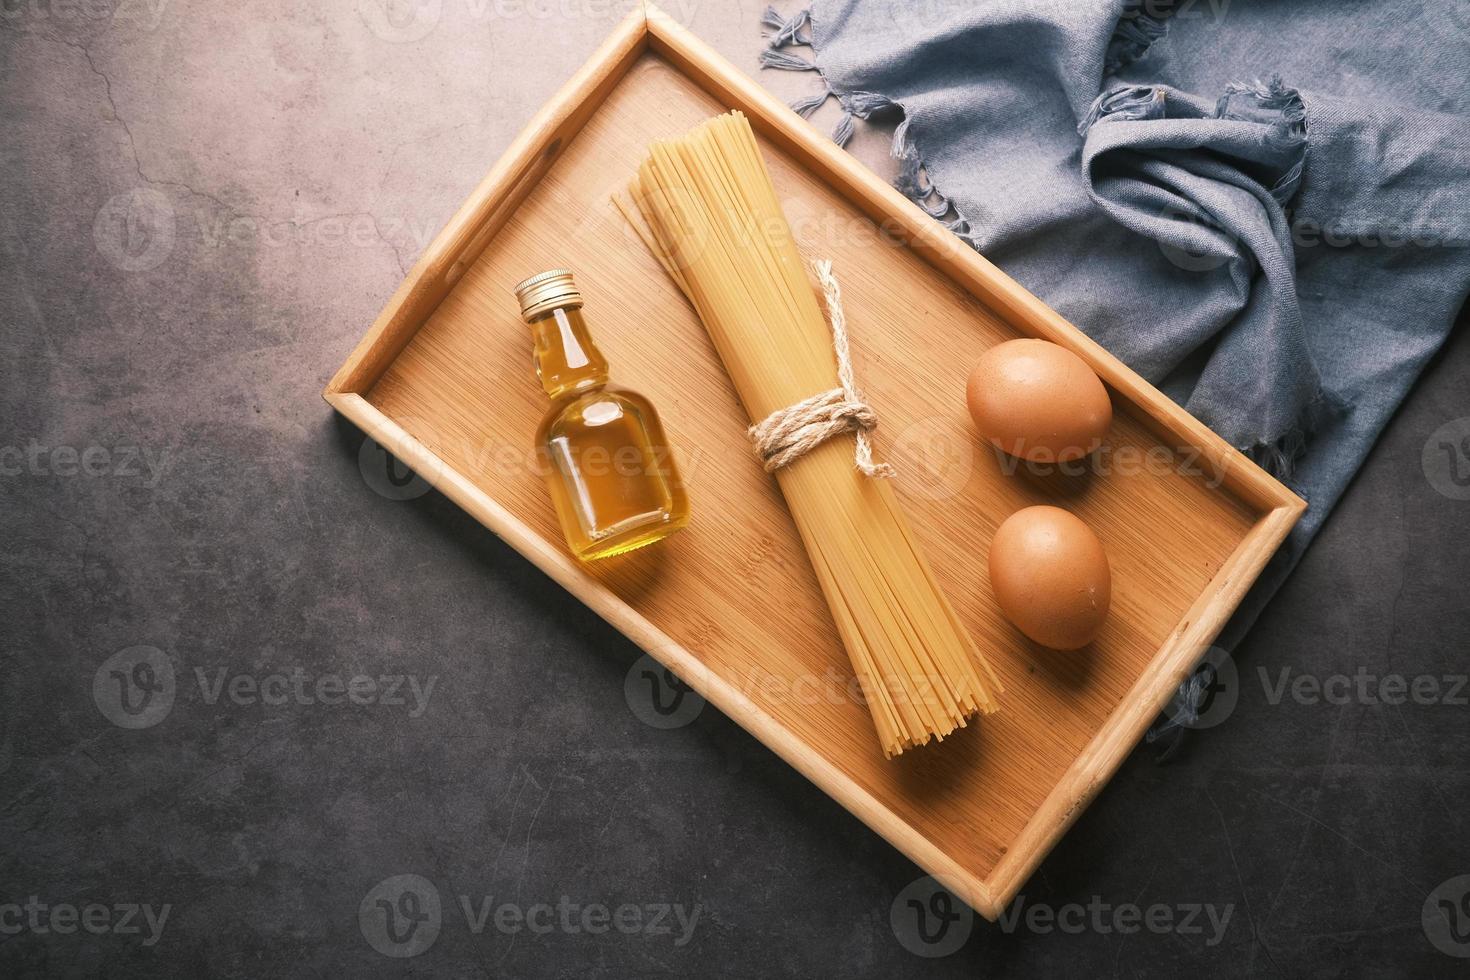 gula långa spagettiägg och olja på bordet foto